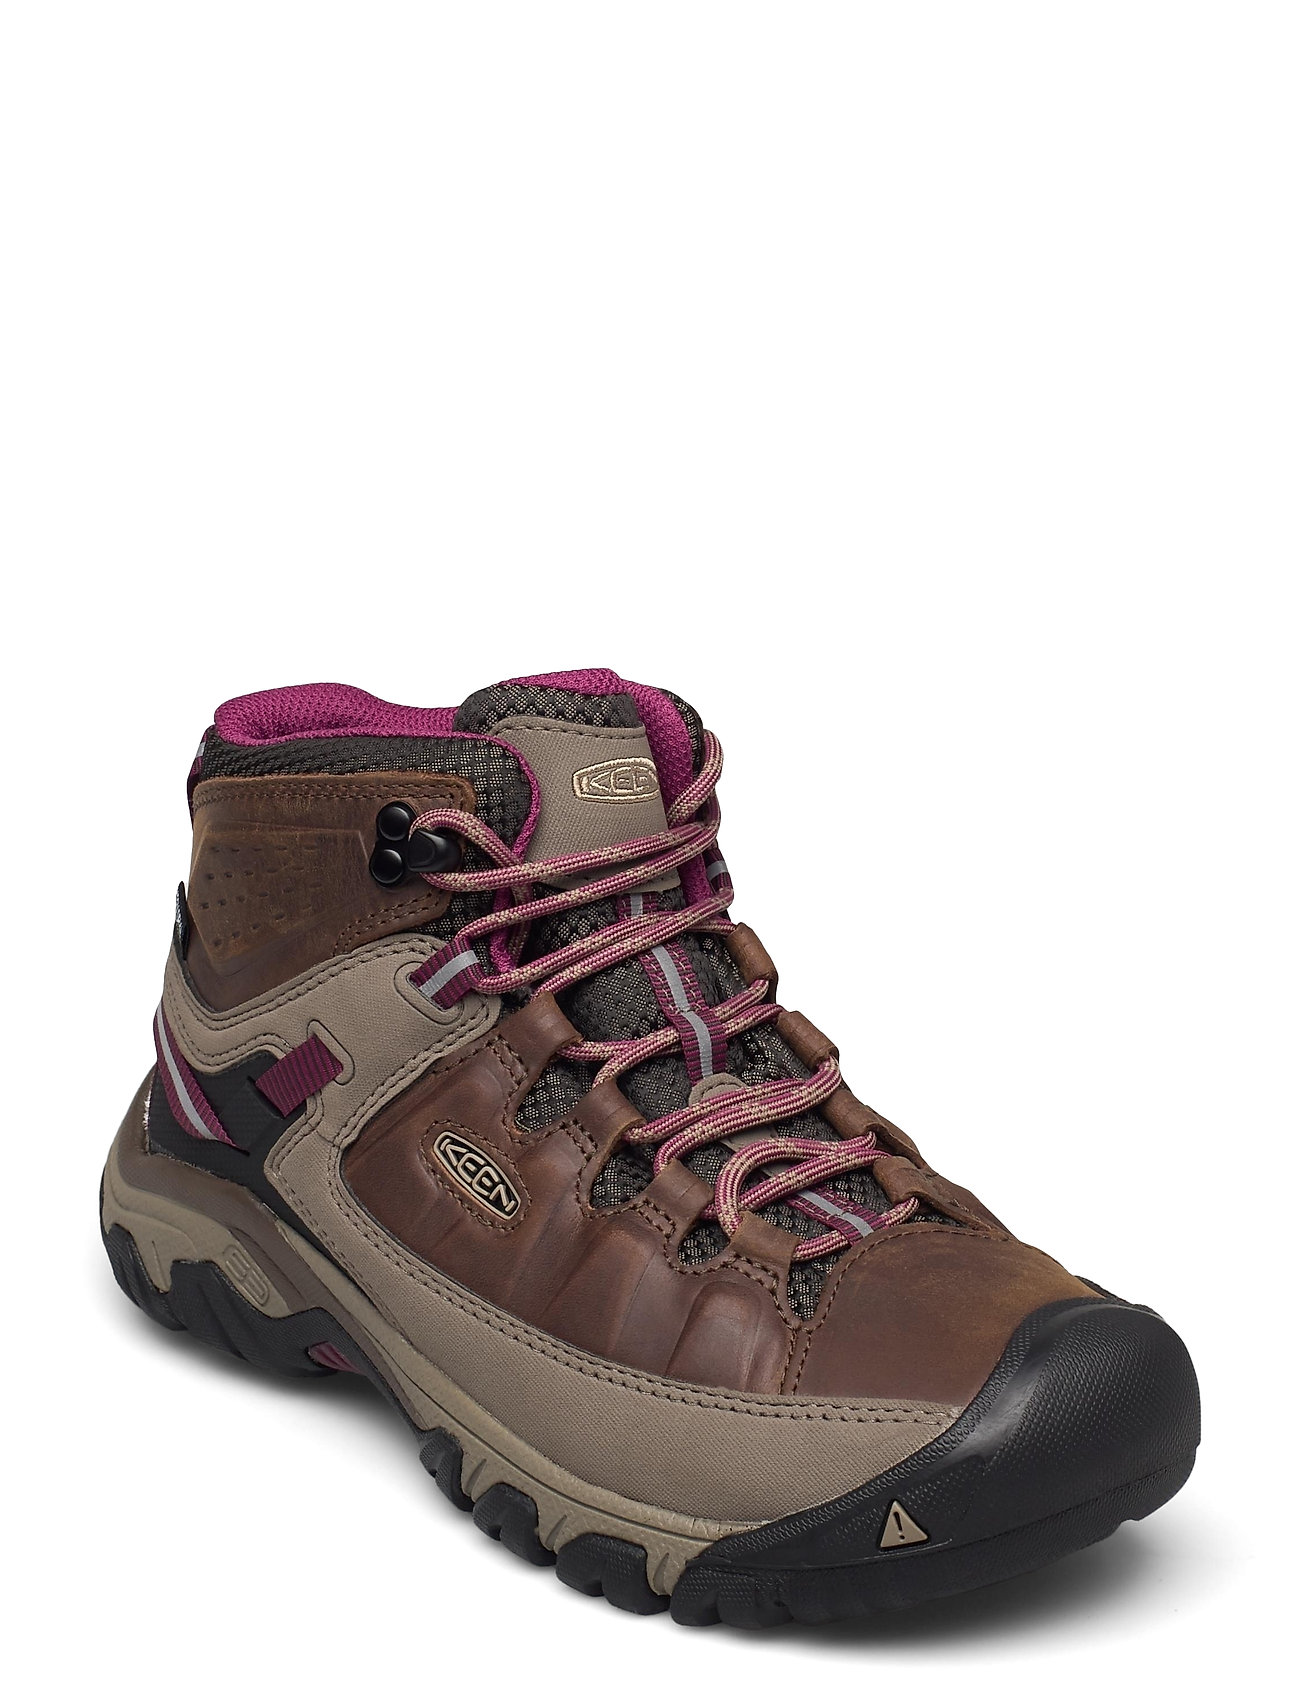 Ke Targhee Iii Mid Wp W Weiss-Boysenberry Sport Sport Shoes Outdoor-hiking Shoes Brown KEEN